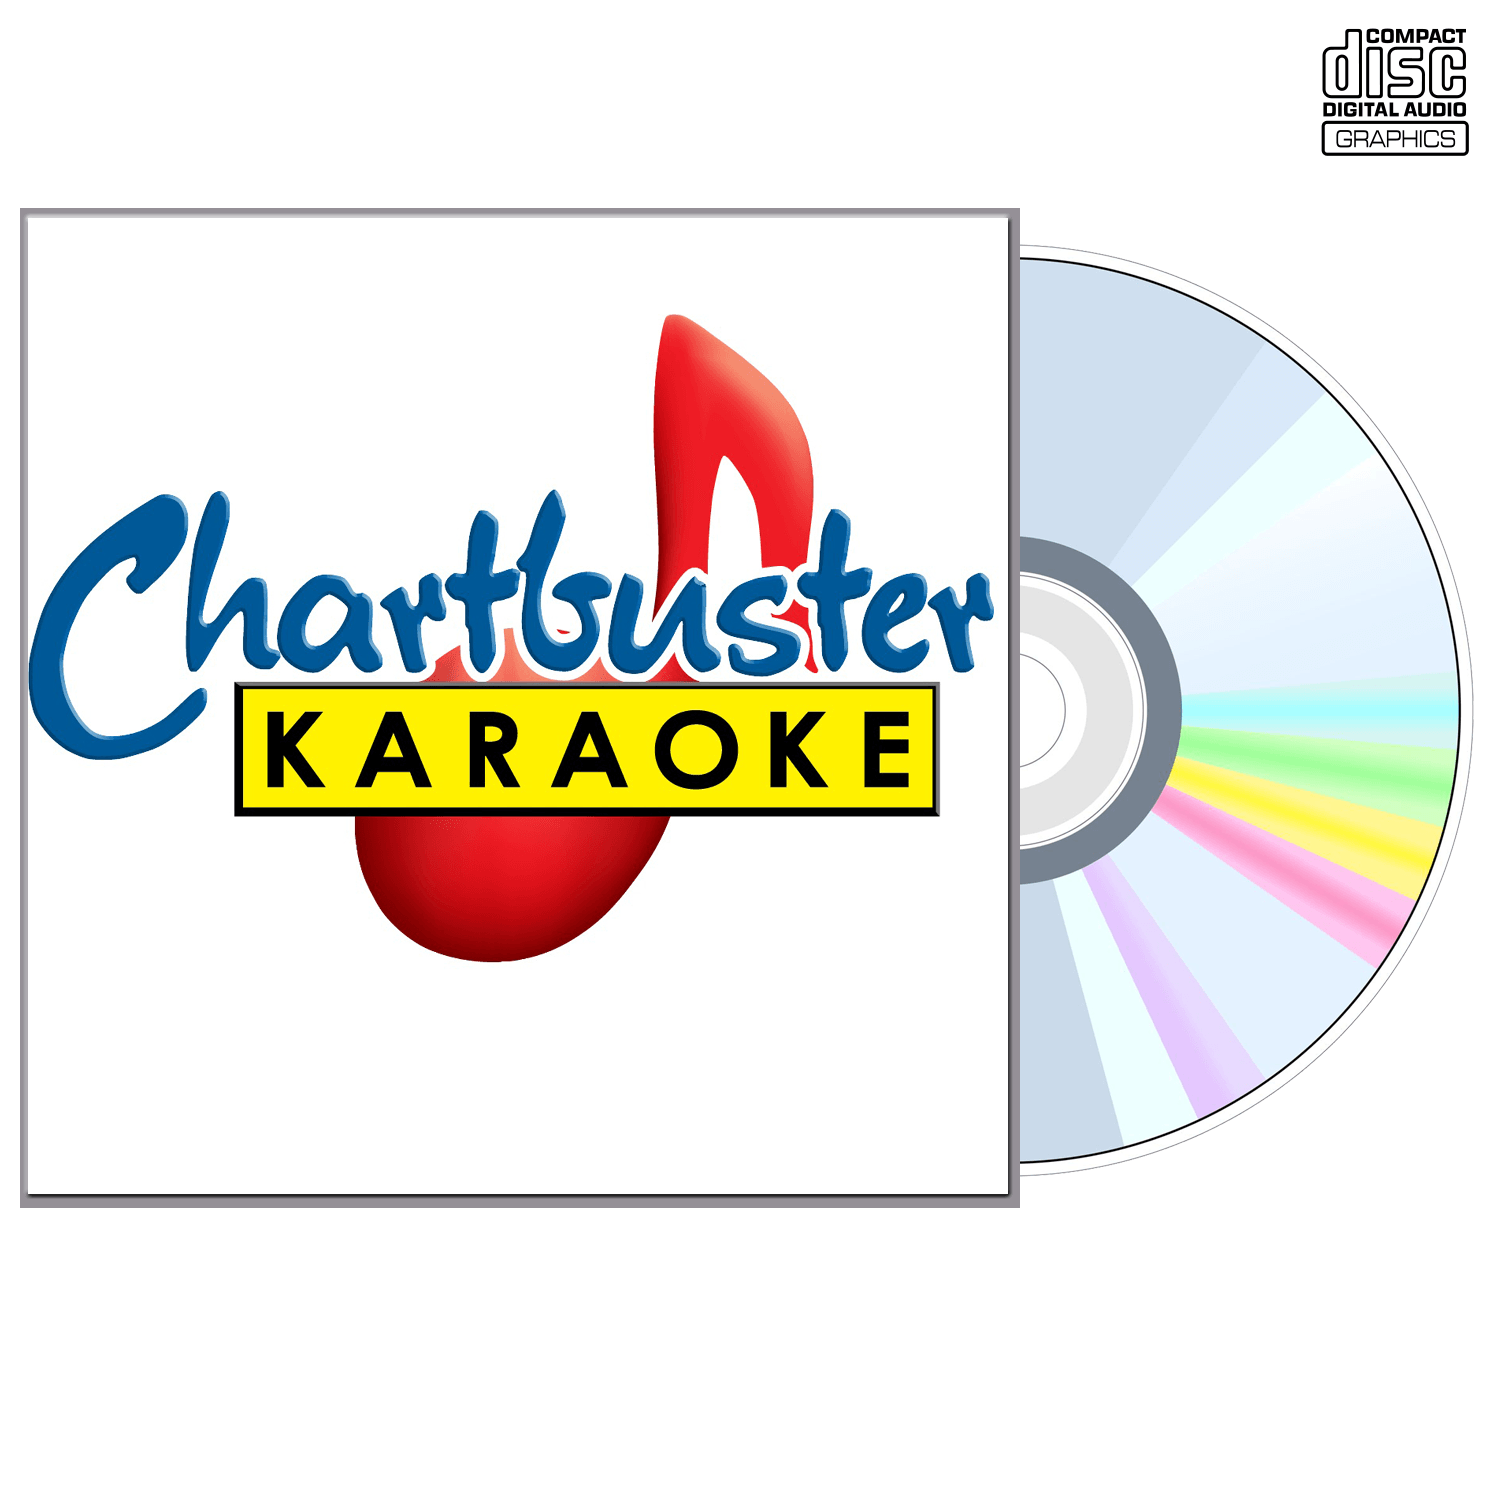 Doug Stone Vol 2 - CD+G - Chartbuster Karaoke - Karaoke Home Entertainment